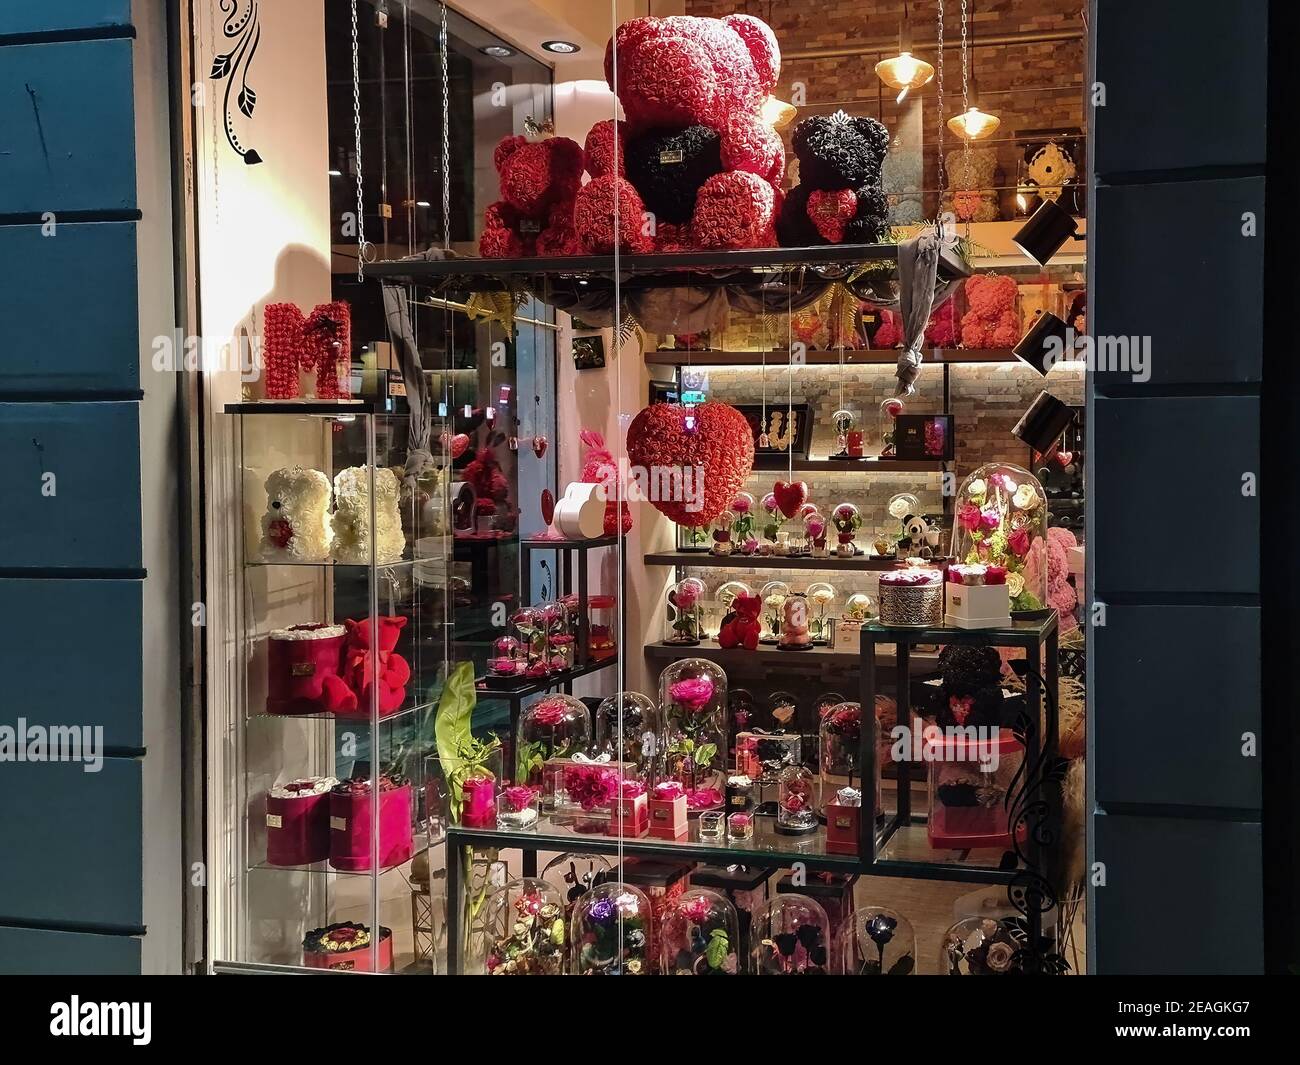 Thessalonique, Grèce – 31 2021 janvier : vitrine de la boutique de fleurs  de la Saint-Valentin. Vue nocturne illuminée des ours amoureux en forme de  fleur en peluche, des coeurs et des